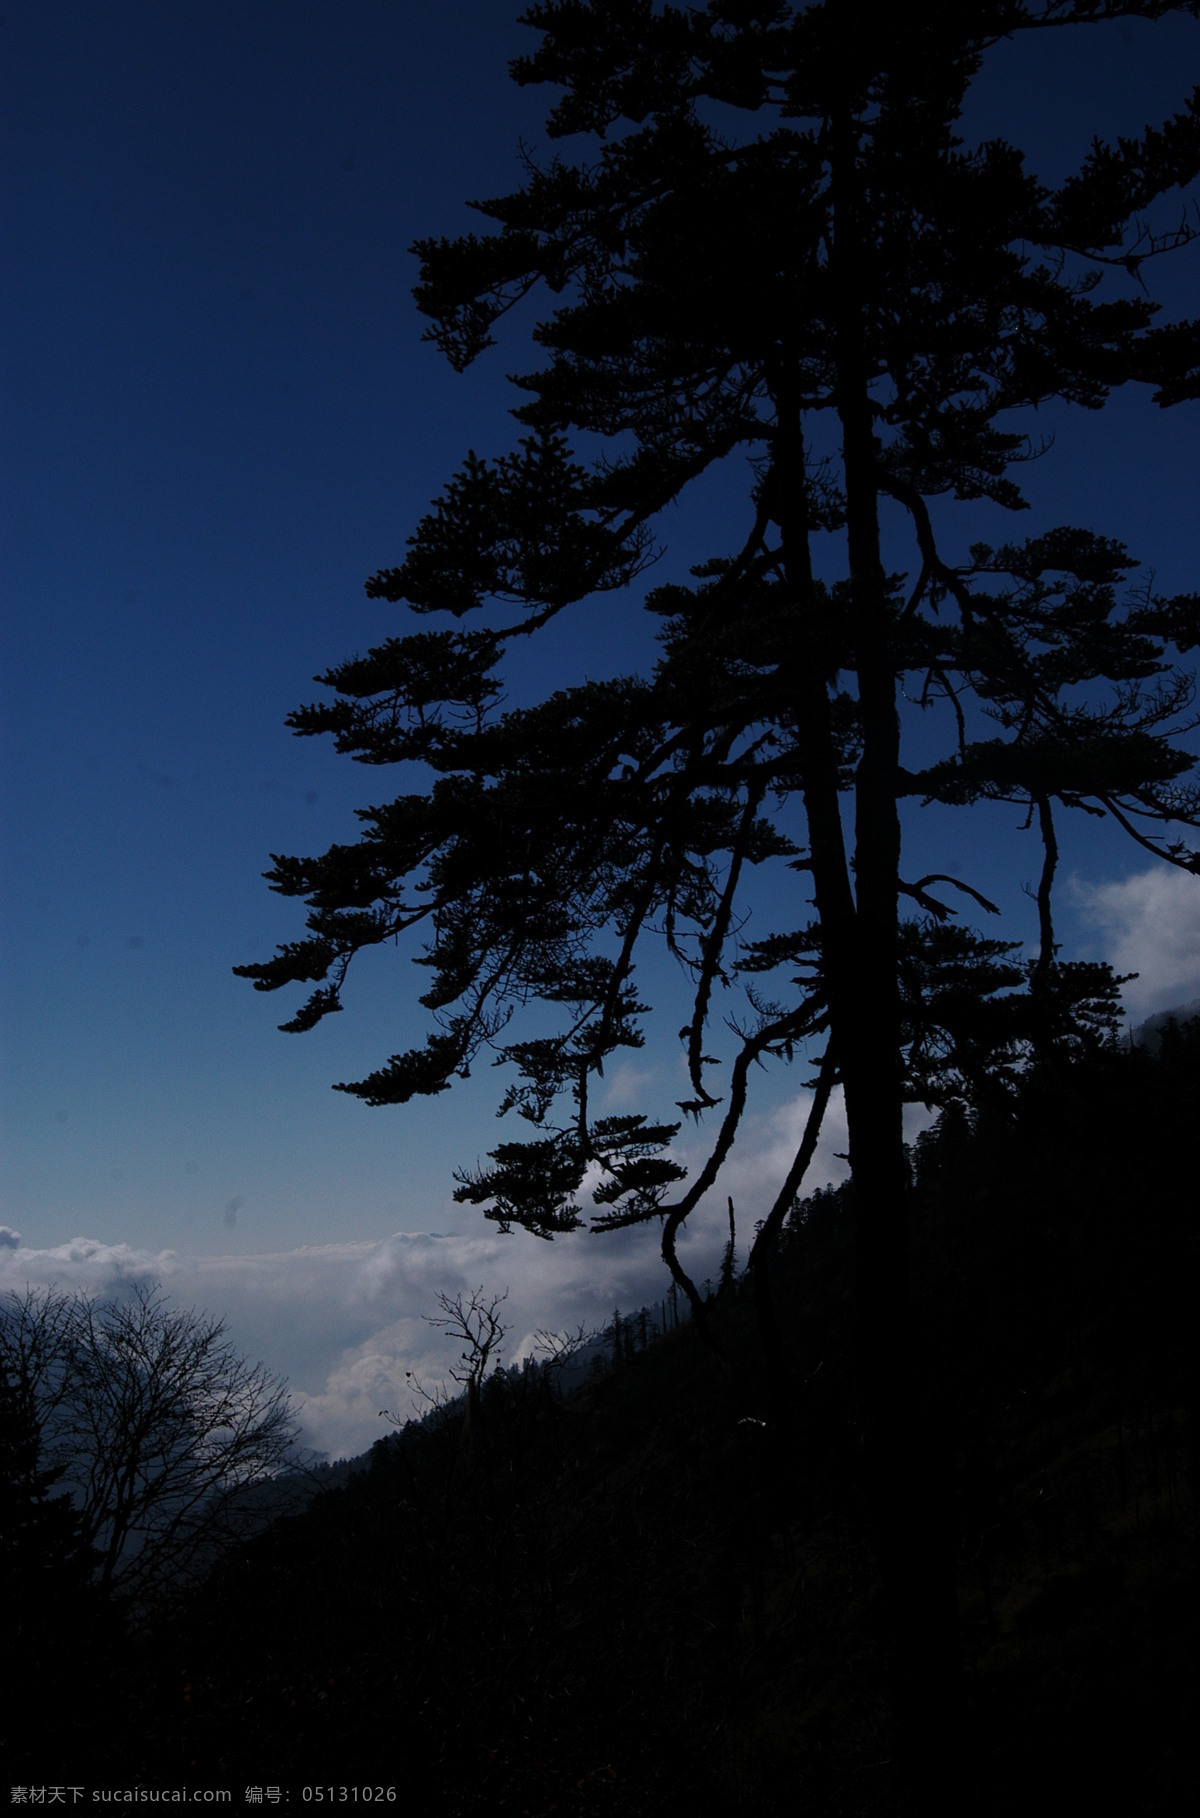 松树 剪影 白云 傍晚 蓝天 旅游摄影 自然风景 松树剪影 沿途的风景 psd源文件